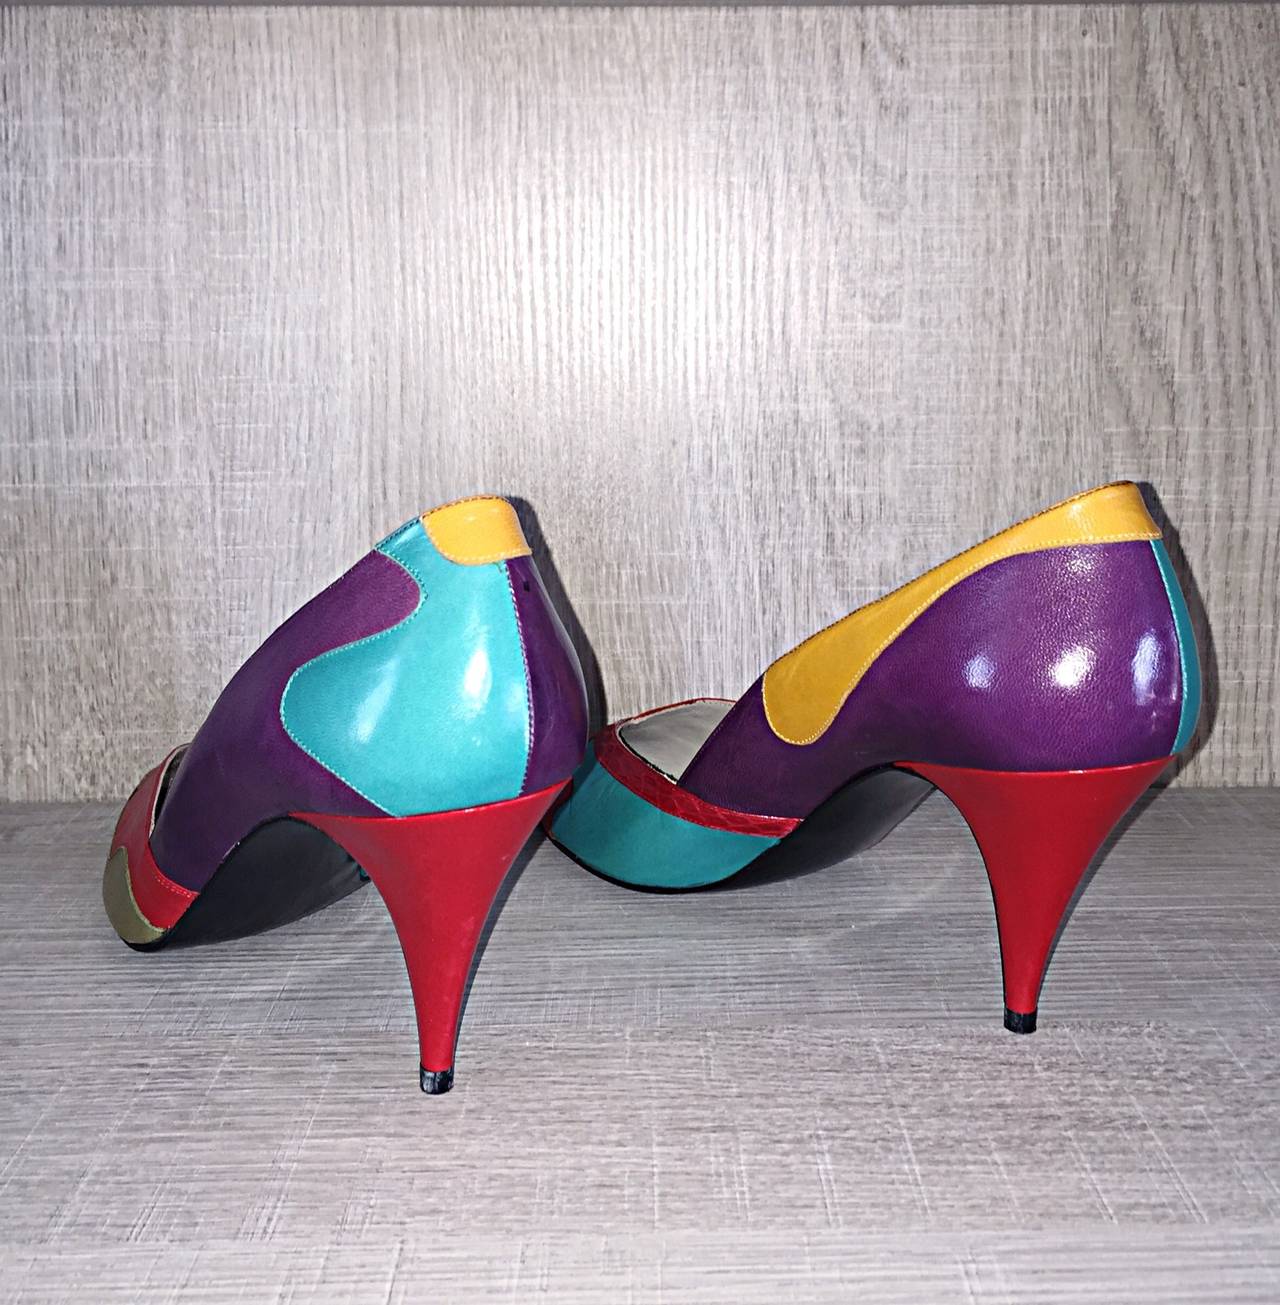 1980s high heels